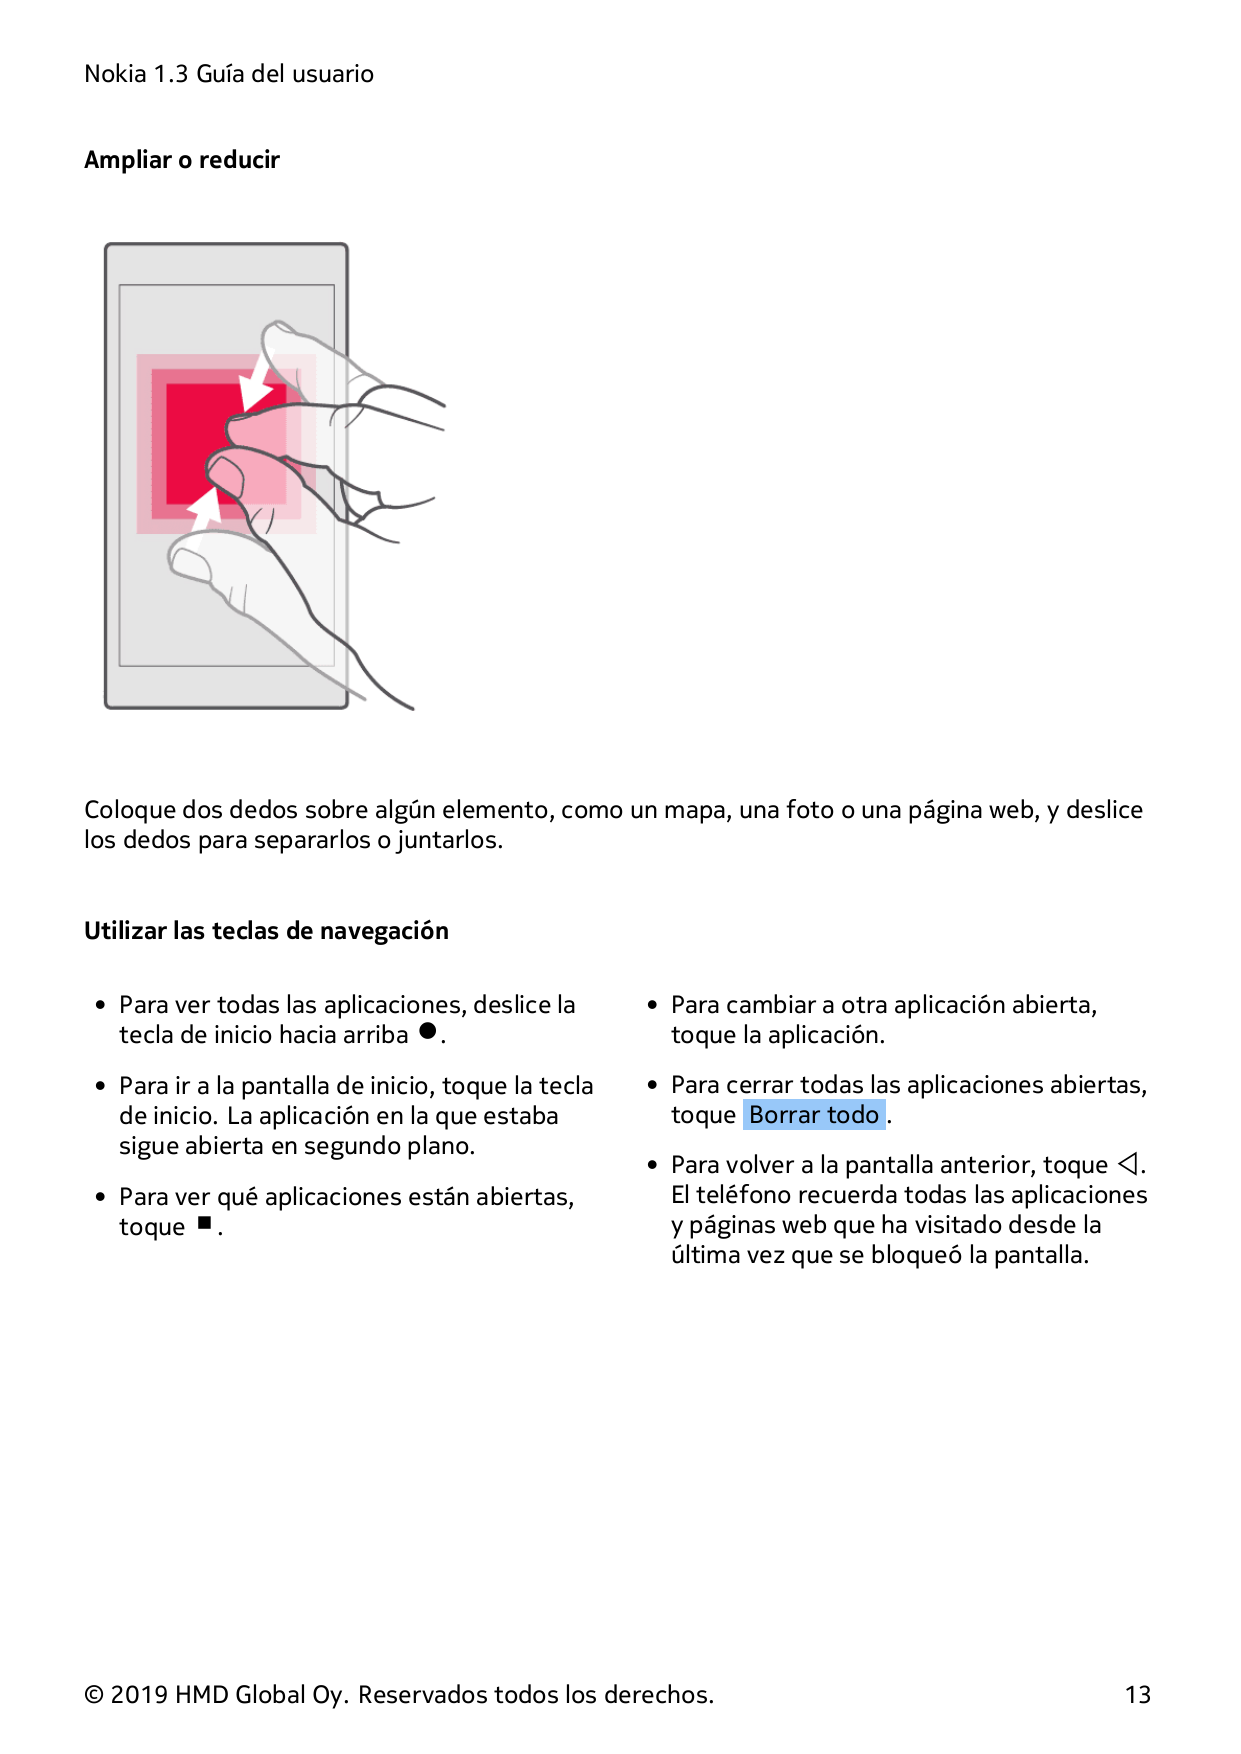 Nokia 1.3 Guía del usuarioAmpliar o reducirColoque dos dedos sobre algún elemento, como un mapa, una foto o una página web, y de